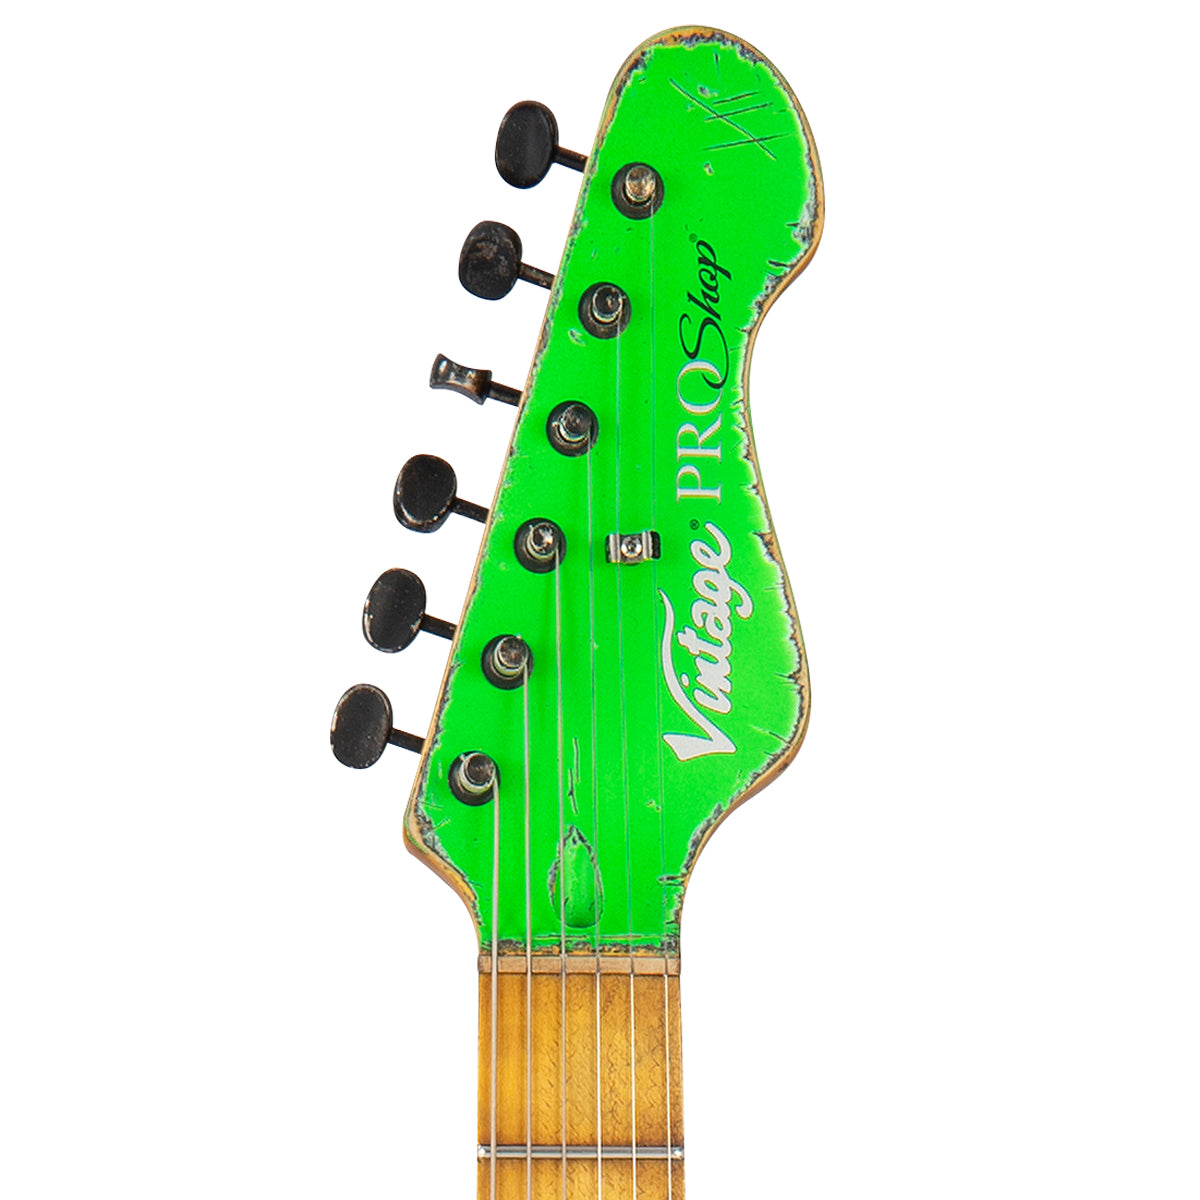 Vintage V6 ProShop Unique ~ Neon Green, Electrics for sale at Richards Guitars.